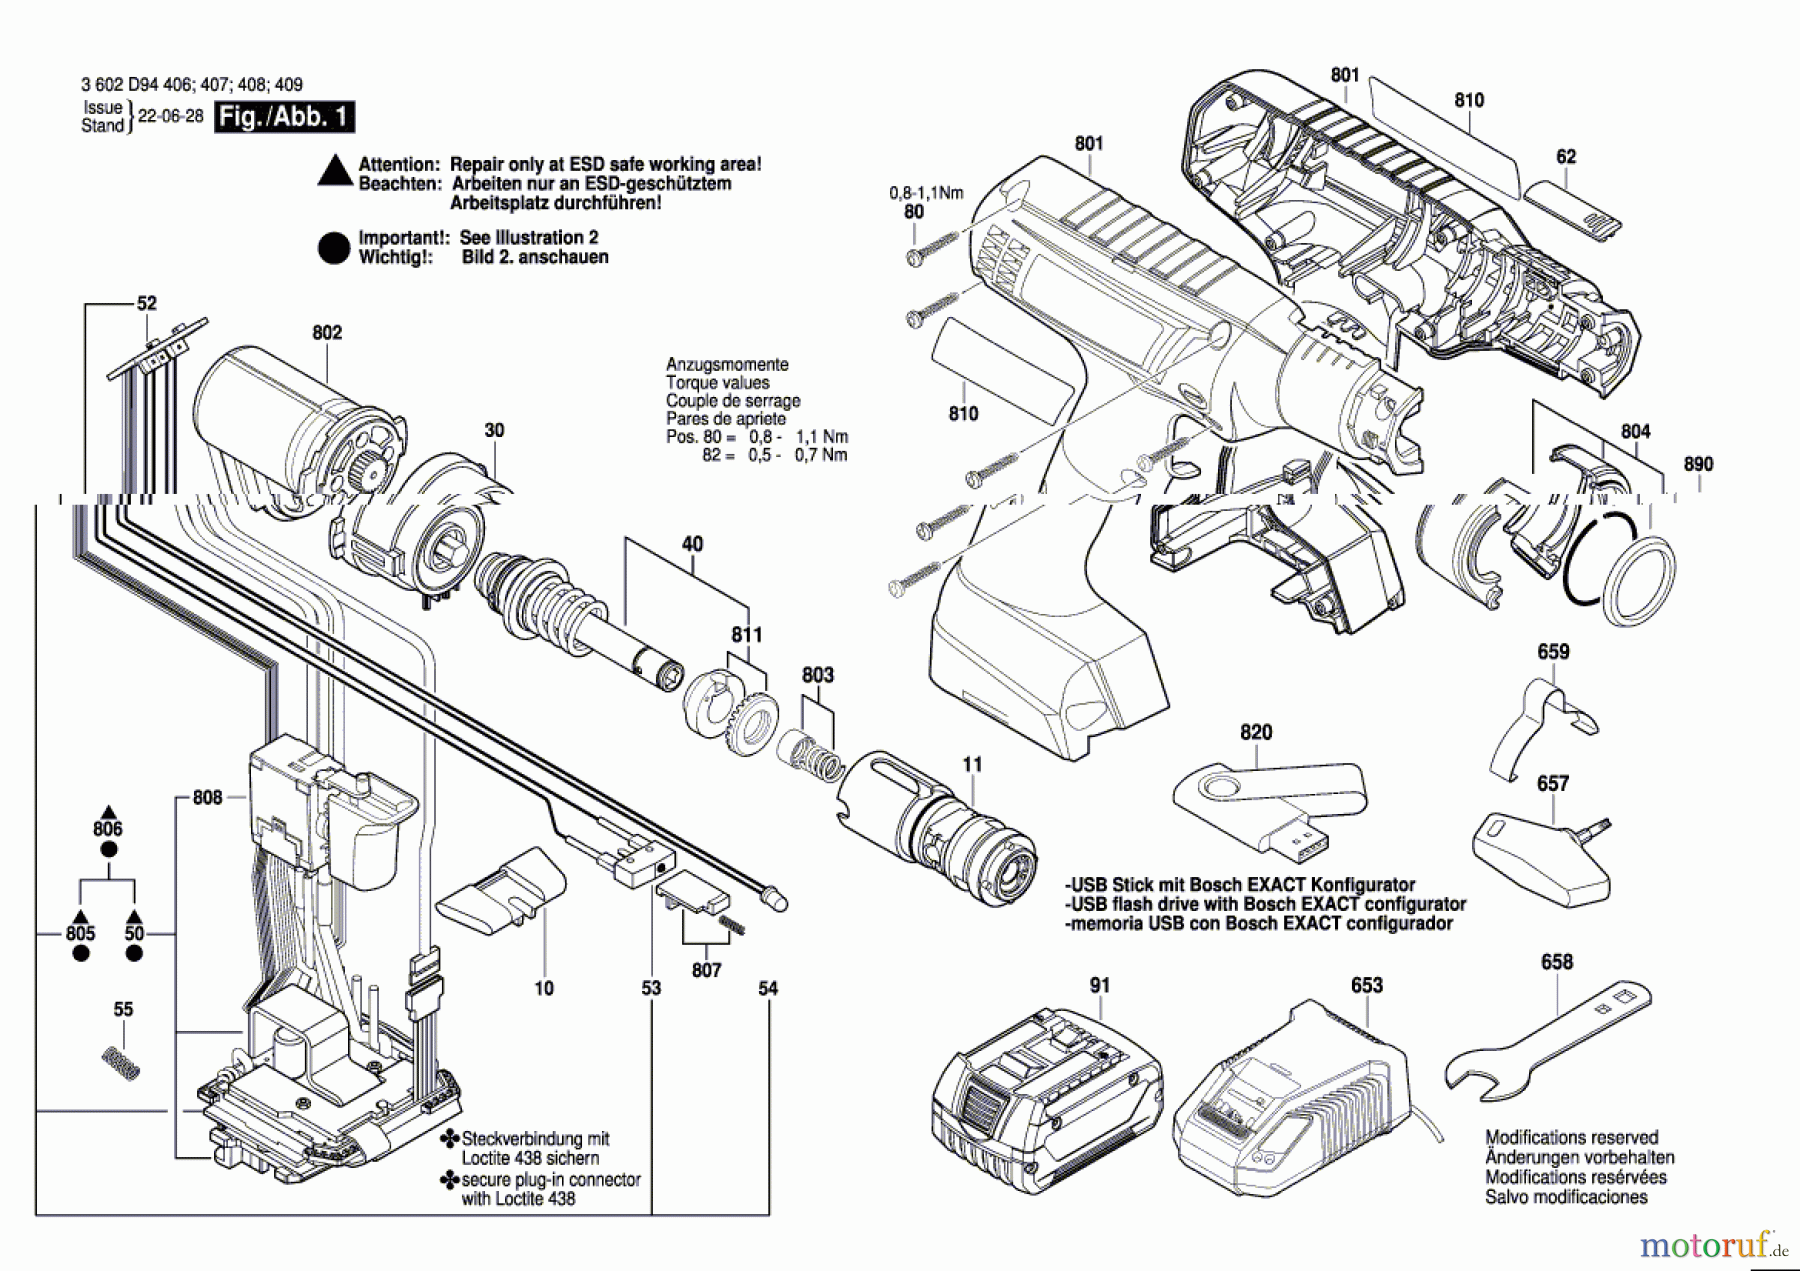  Bosch Akku Werkzeug Iw-Akku-Schrauber EXACT ION 8-1100 WK Seite 1